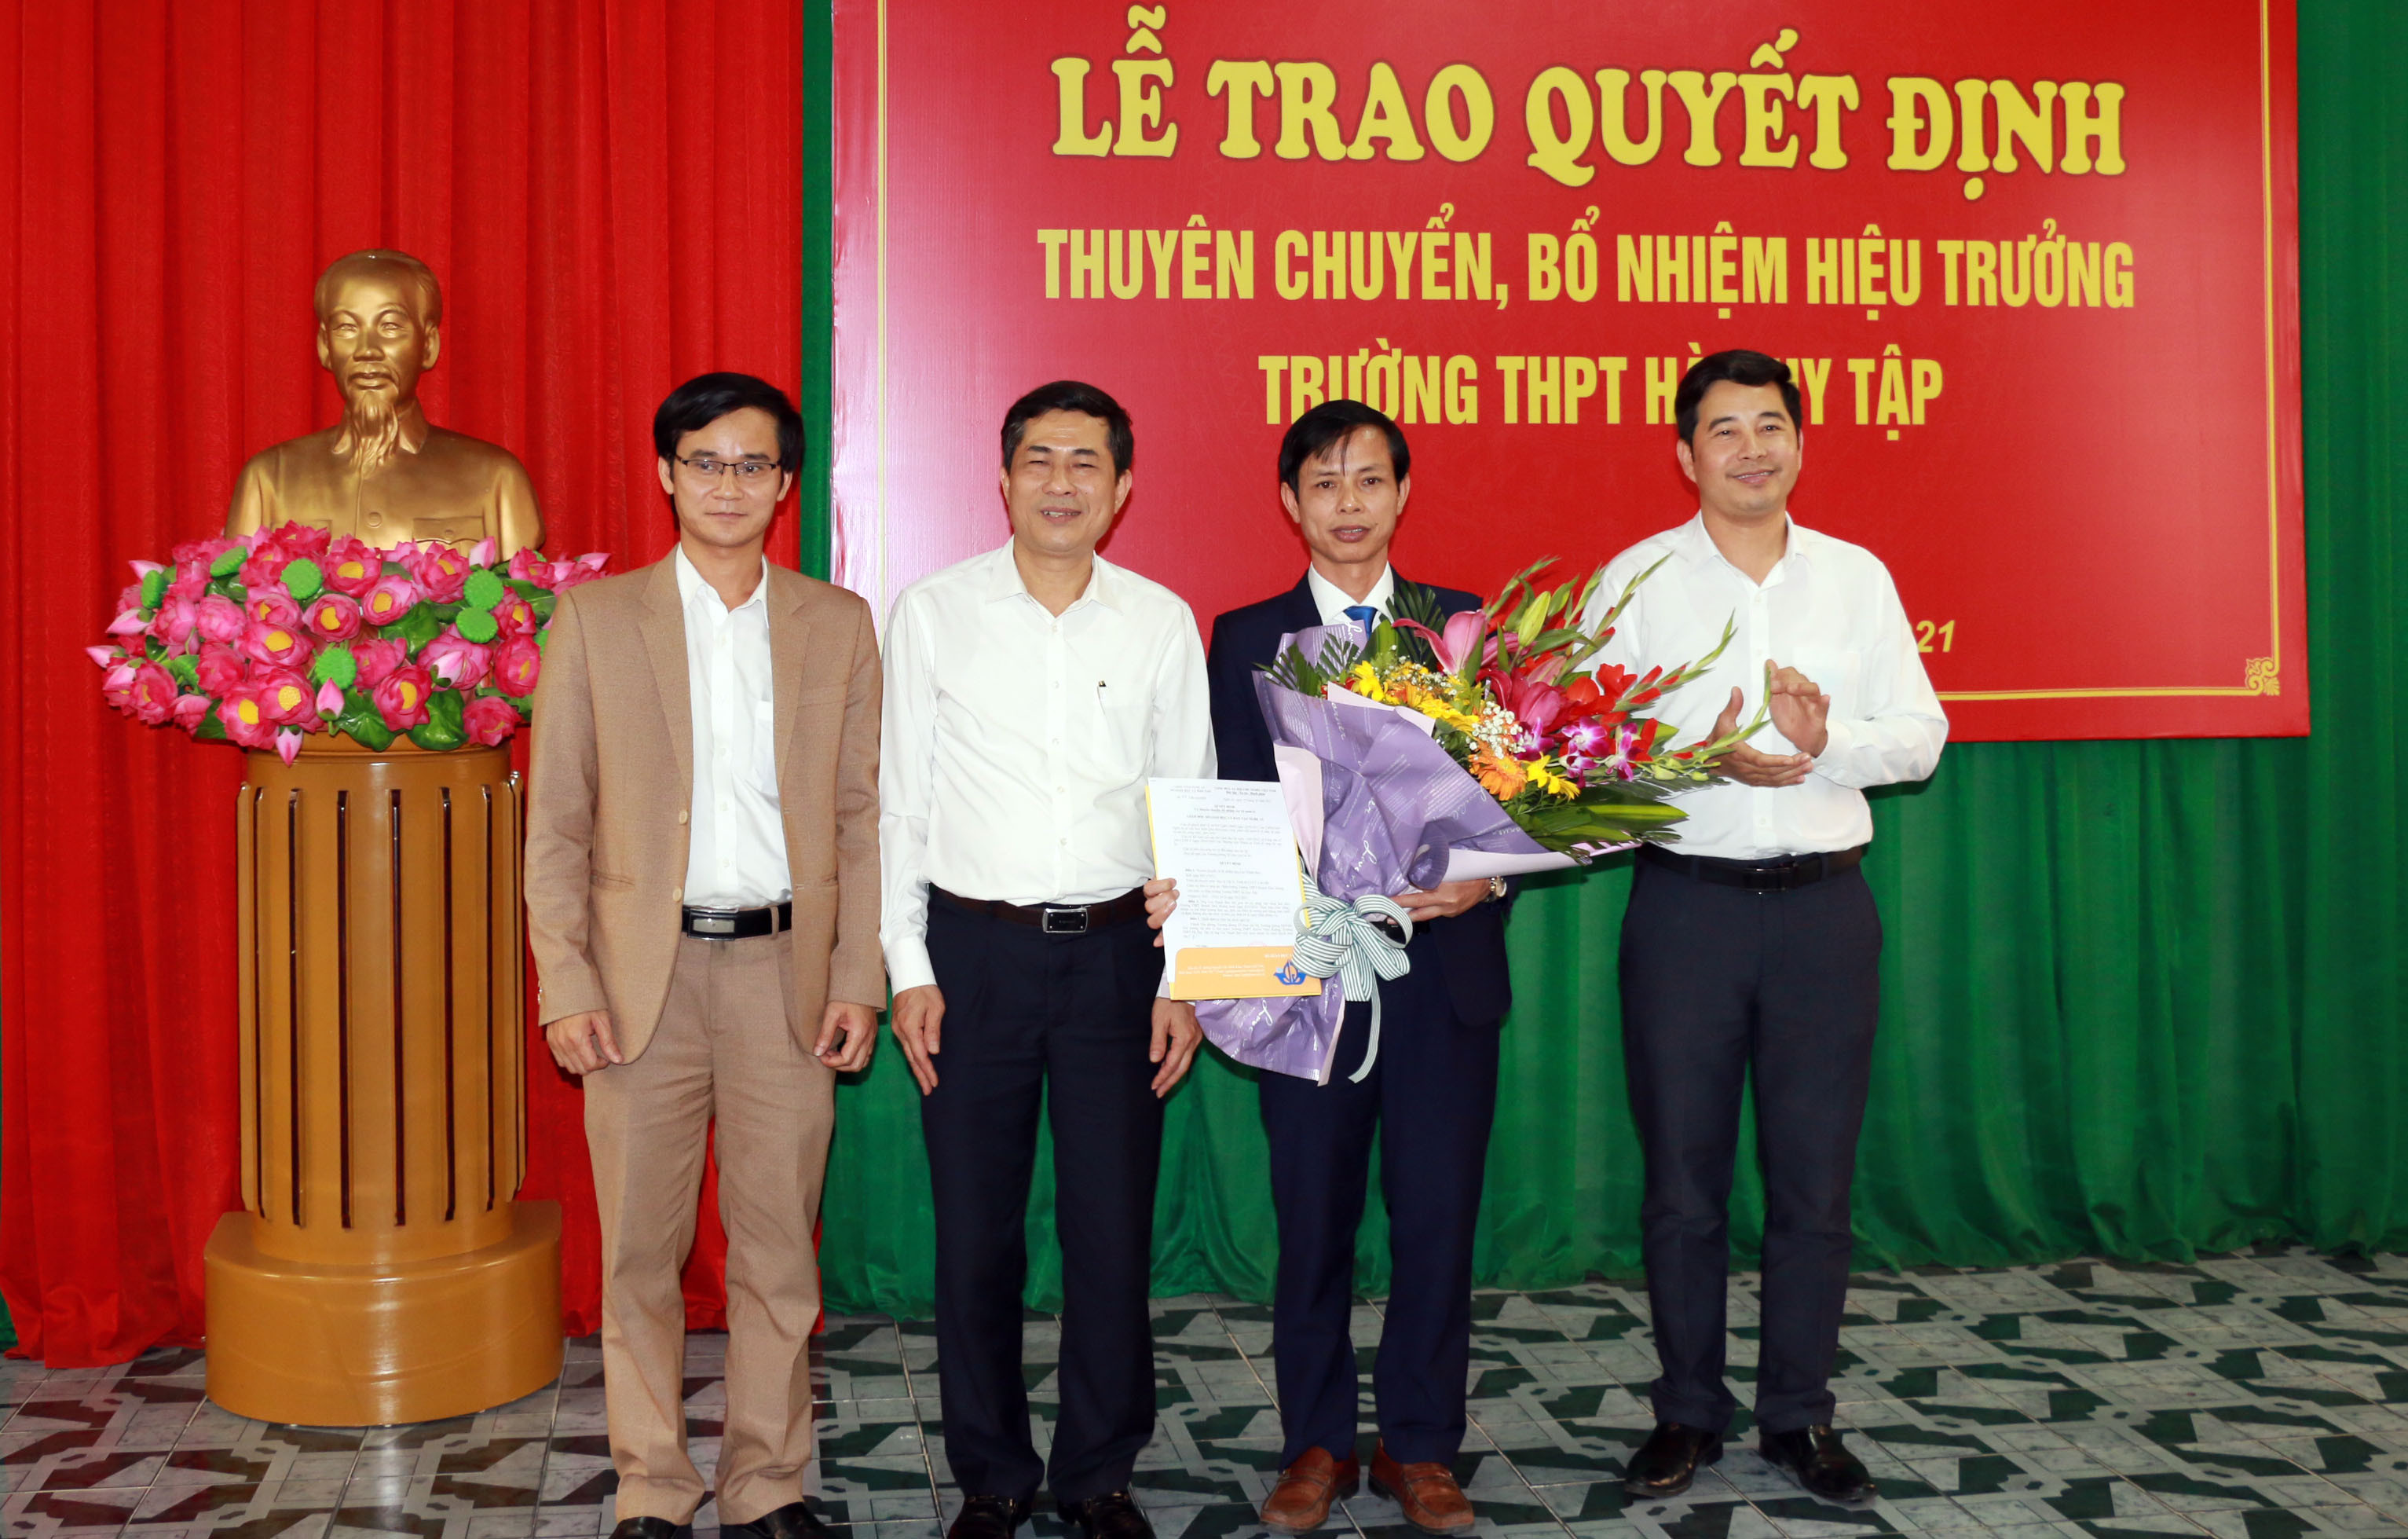 Giám đốc Sở Giáo dục và Đào tạo Thái Văn Thành trao quyết định bổ nhiệm Hiệu trưởng Trường THPT Hà Huy Tập cho ông Cao Thanh Bảo. Ảnh: MH.